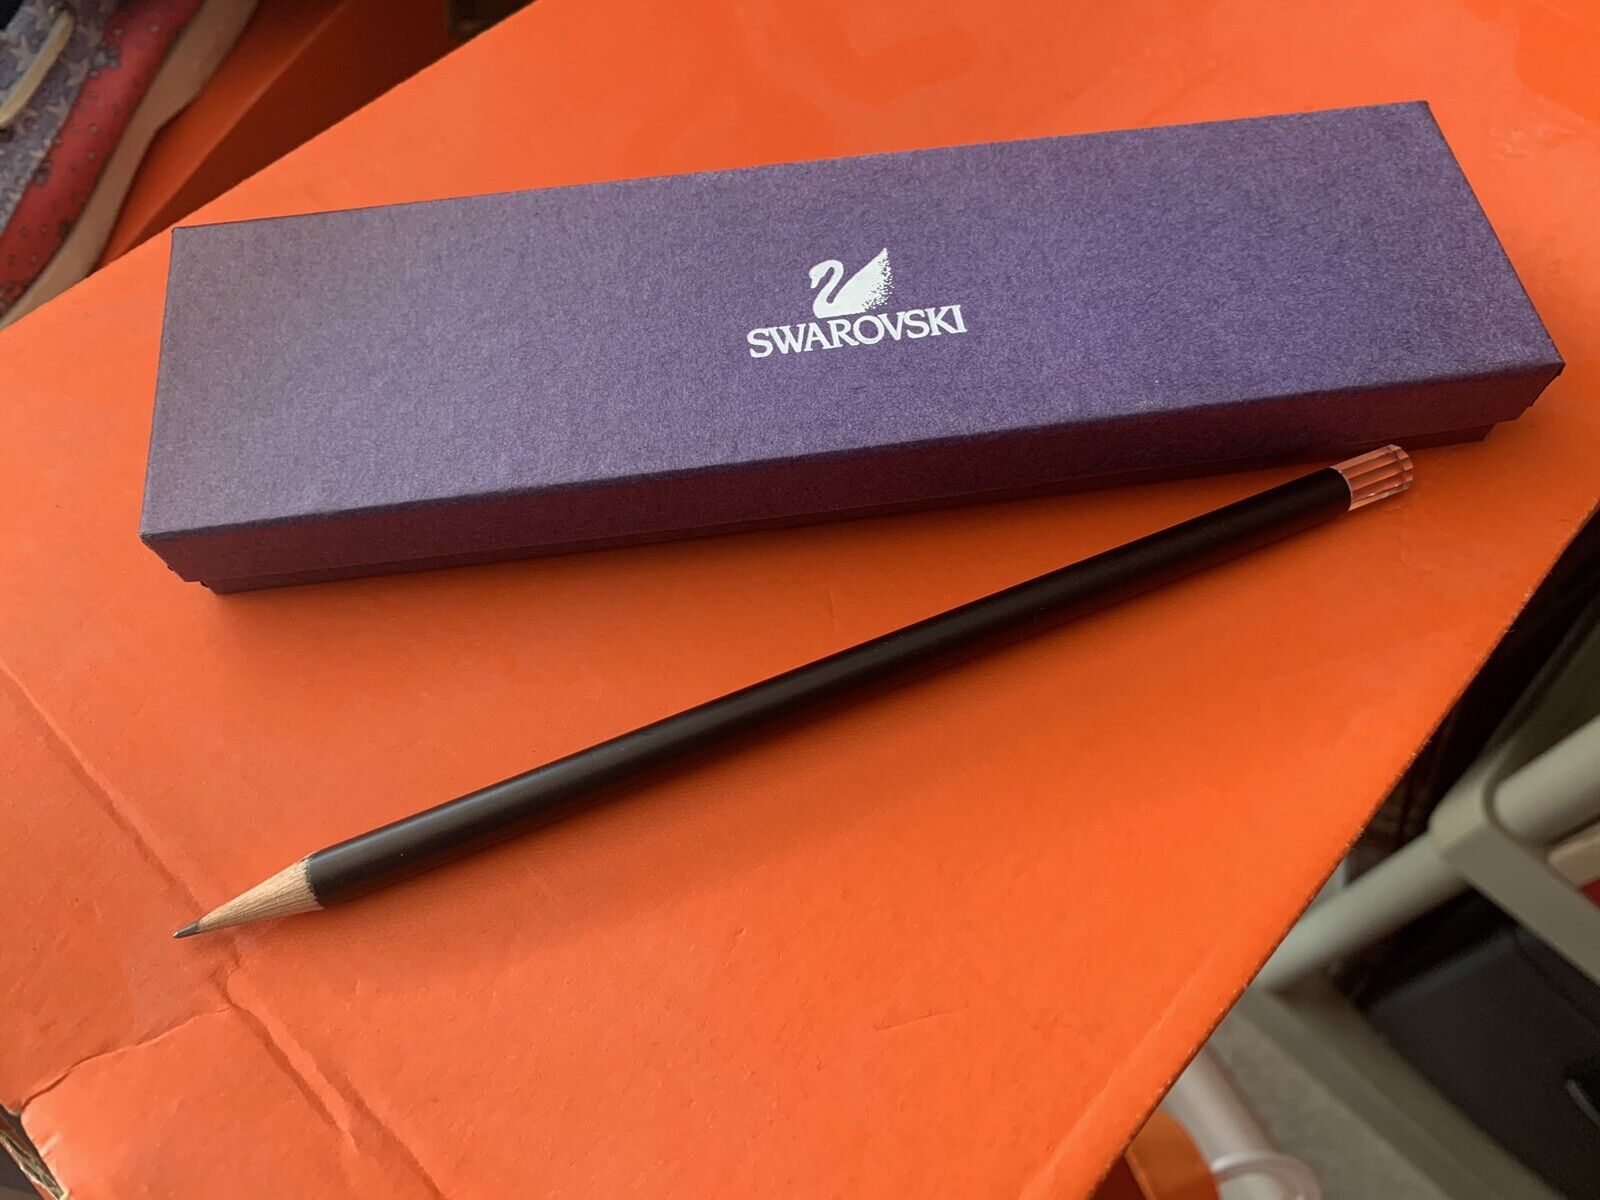 New Swarovski #2 Pencil in box 